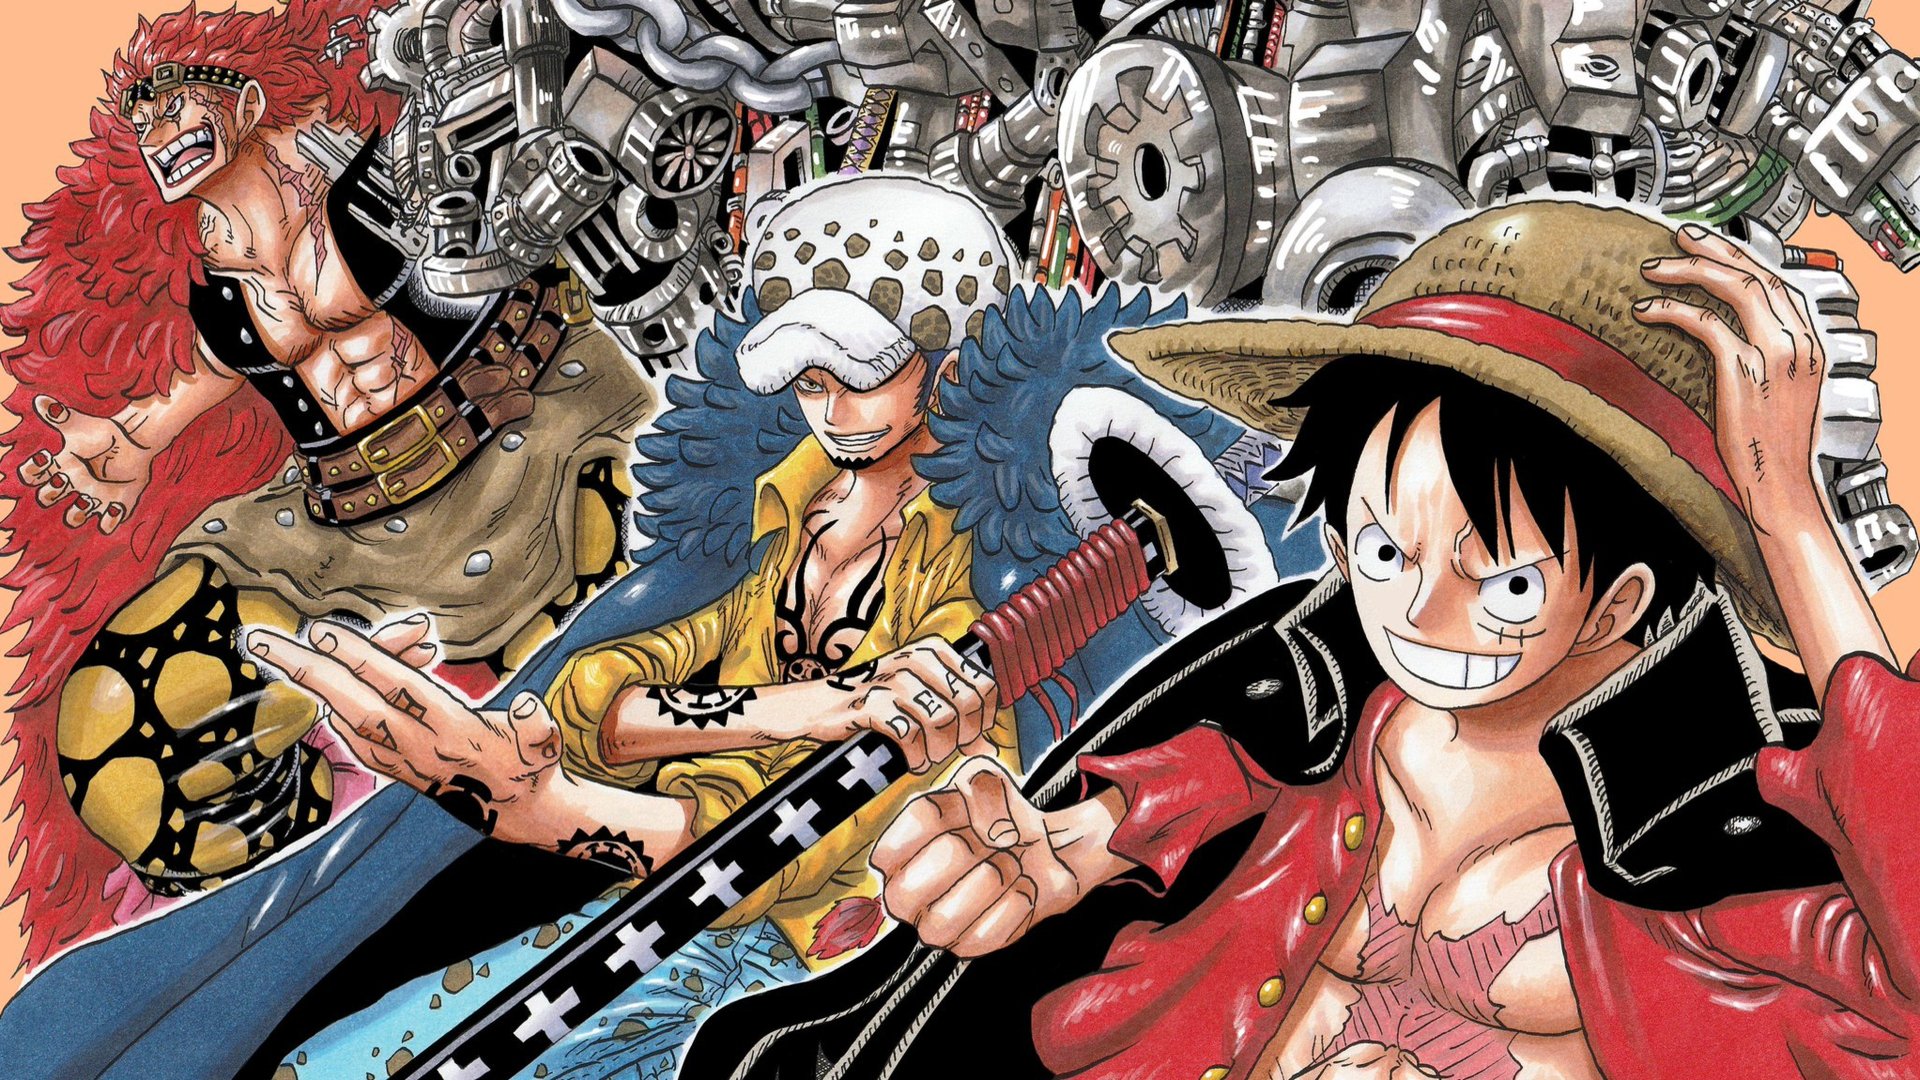 Law và Kid trong One Piece: Theo dõi cuộc phiêu lưu của Law và Kid trong One Piece, hai chiến binh ma quỷ với những kỹ năng trái ác quỷ đáng sợ. Khi hai người đối đầu với nhau, bầu không khí trở nên căng thẳng và khắc nghiệt. Hãy tham gia để theo dõi những trận đấu căng thẳng và đầy cảm xúc của Law và Kid trong One Piece.